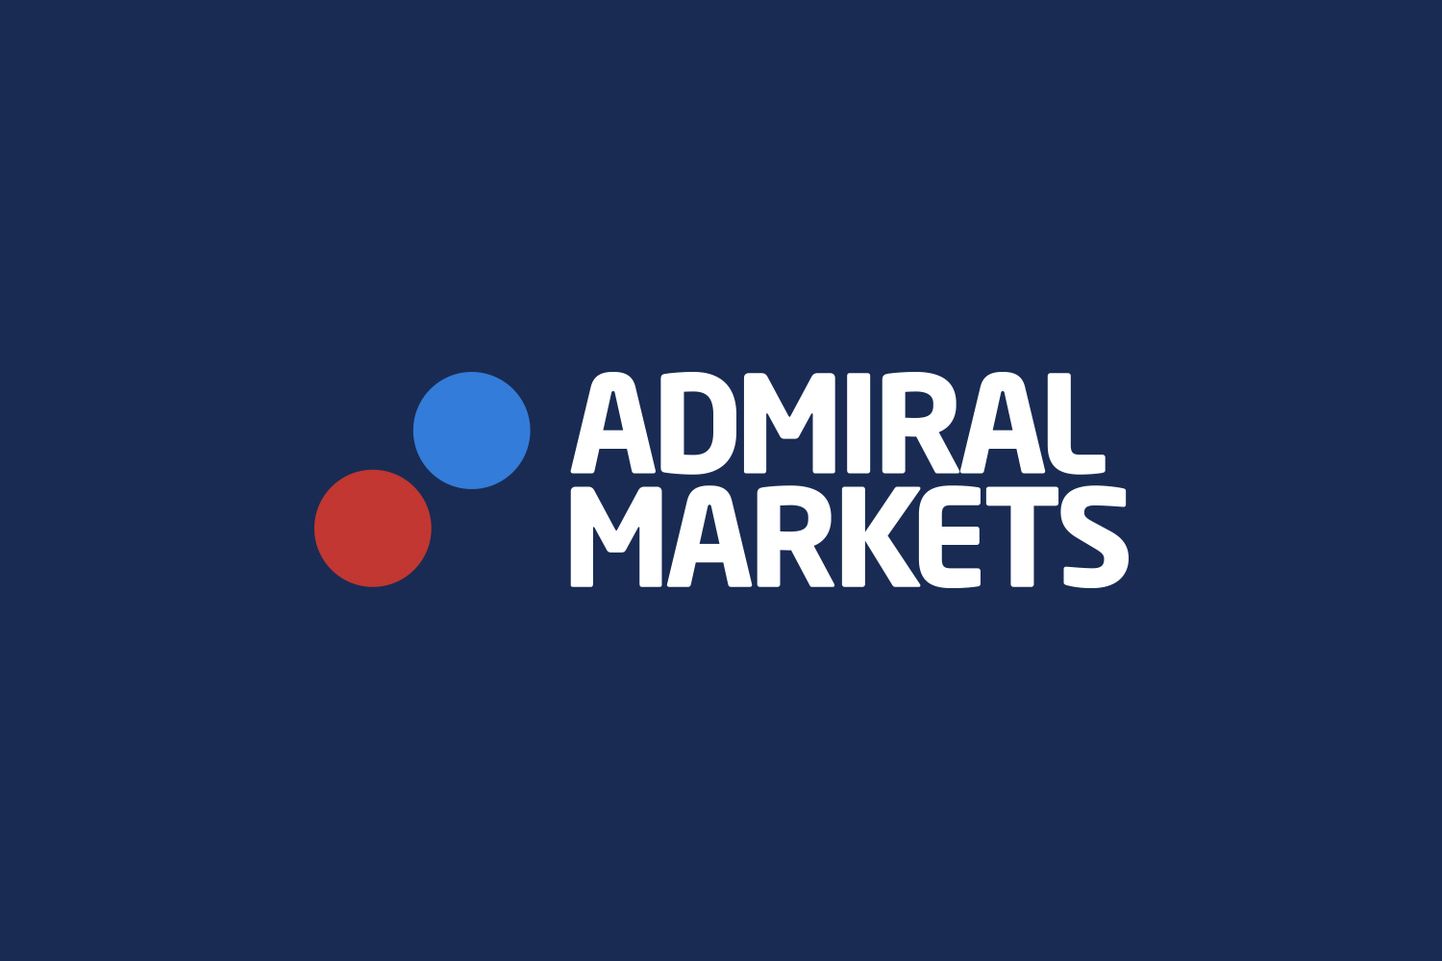 Admiral Markets logo.